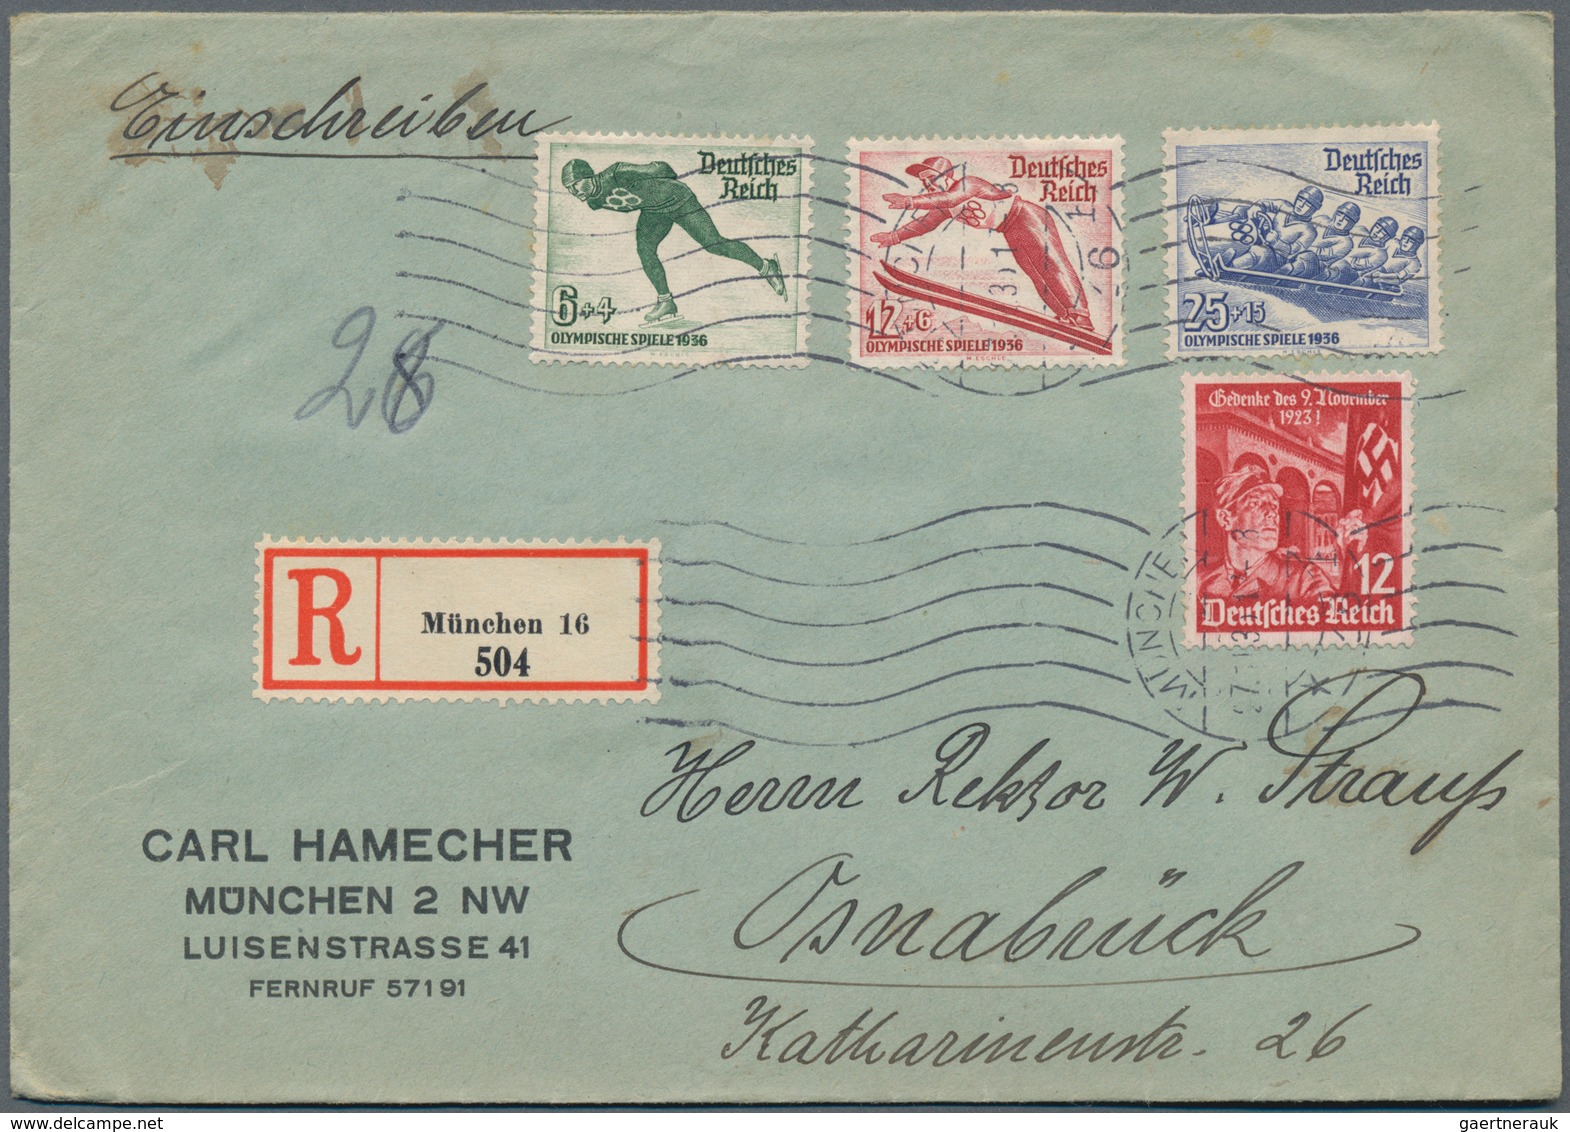 Deutsches Reich - 3. Reich: 1933/1945, einige wenige davor: vielseitiger Posten von über 1.300 Brief